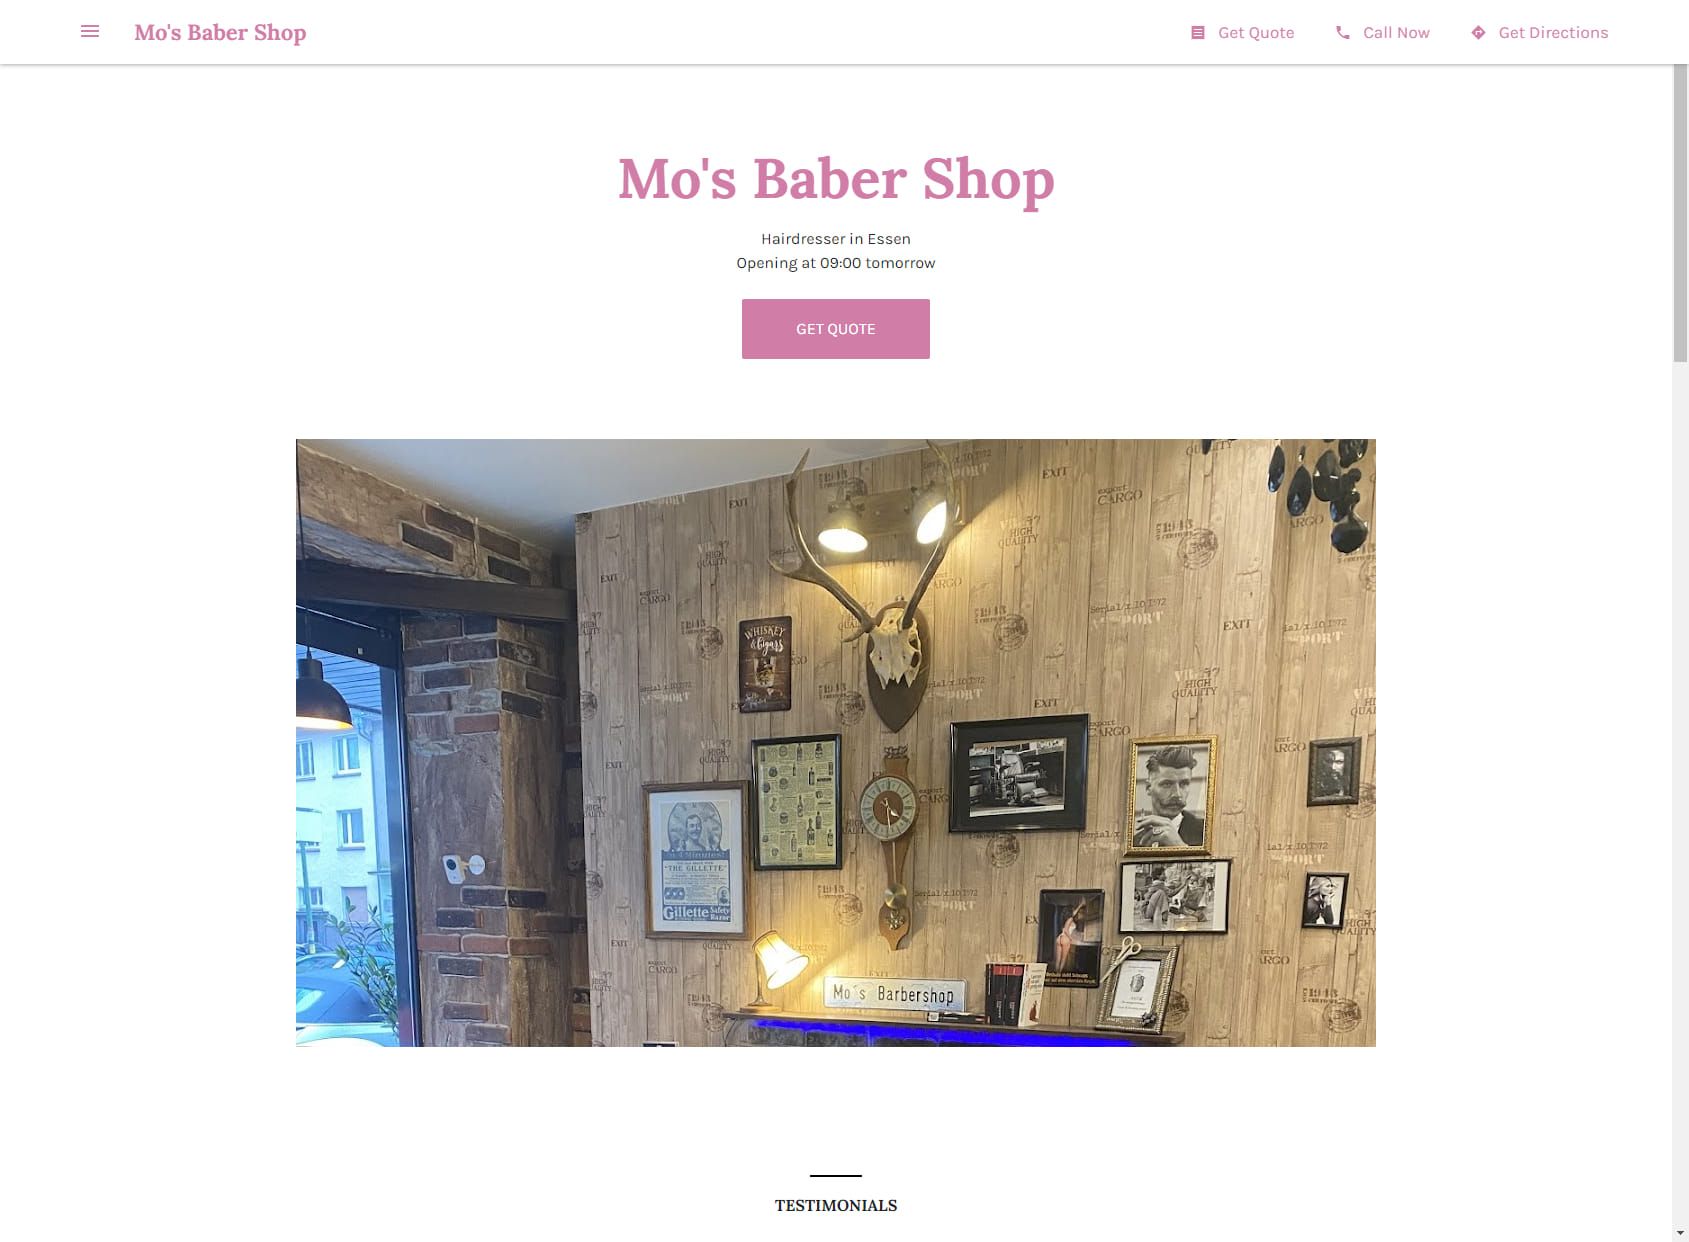 Mo's Barber Shop